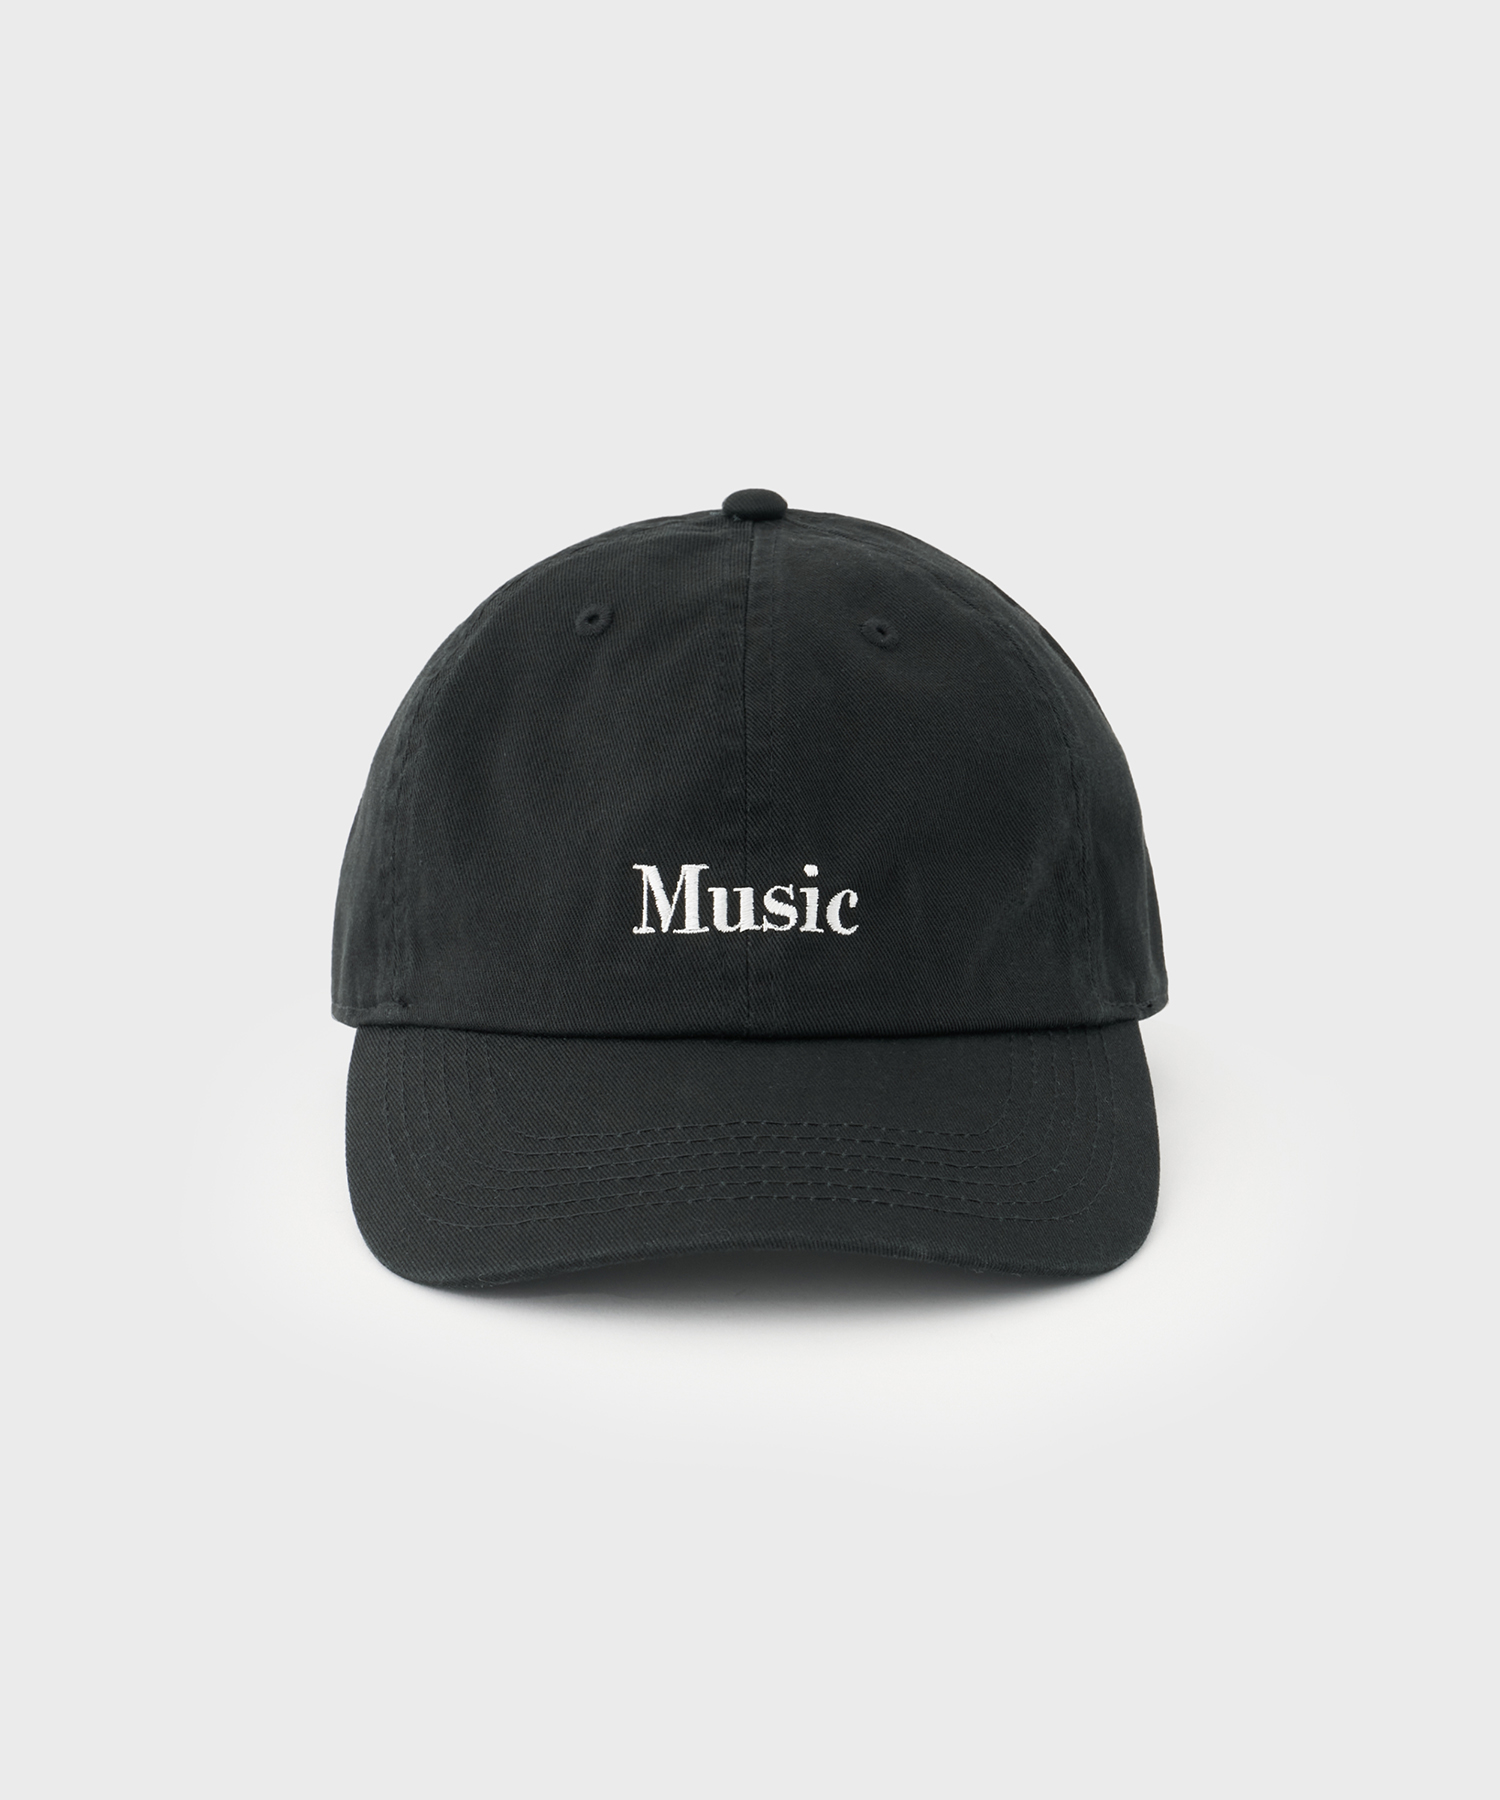 Music Cap (Black)